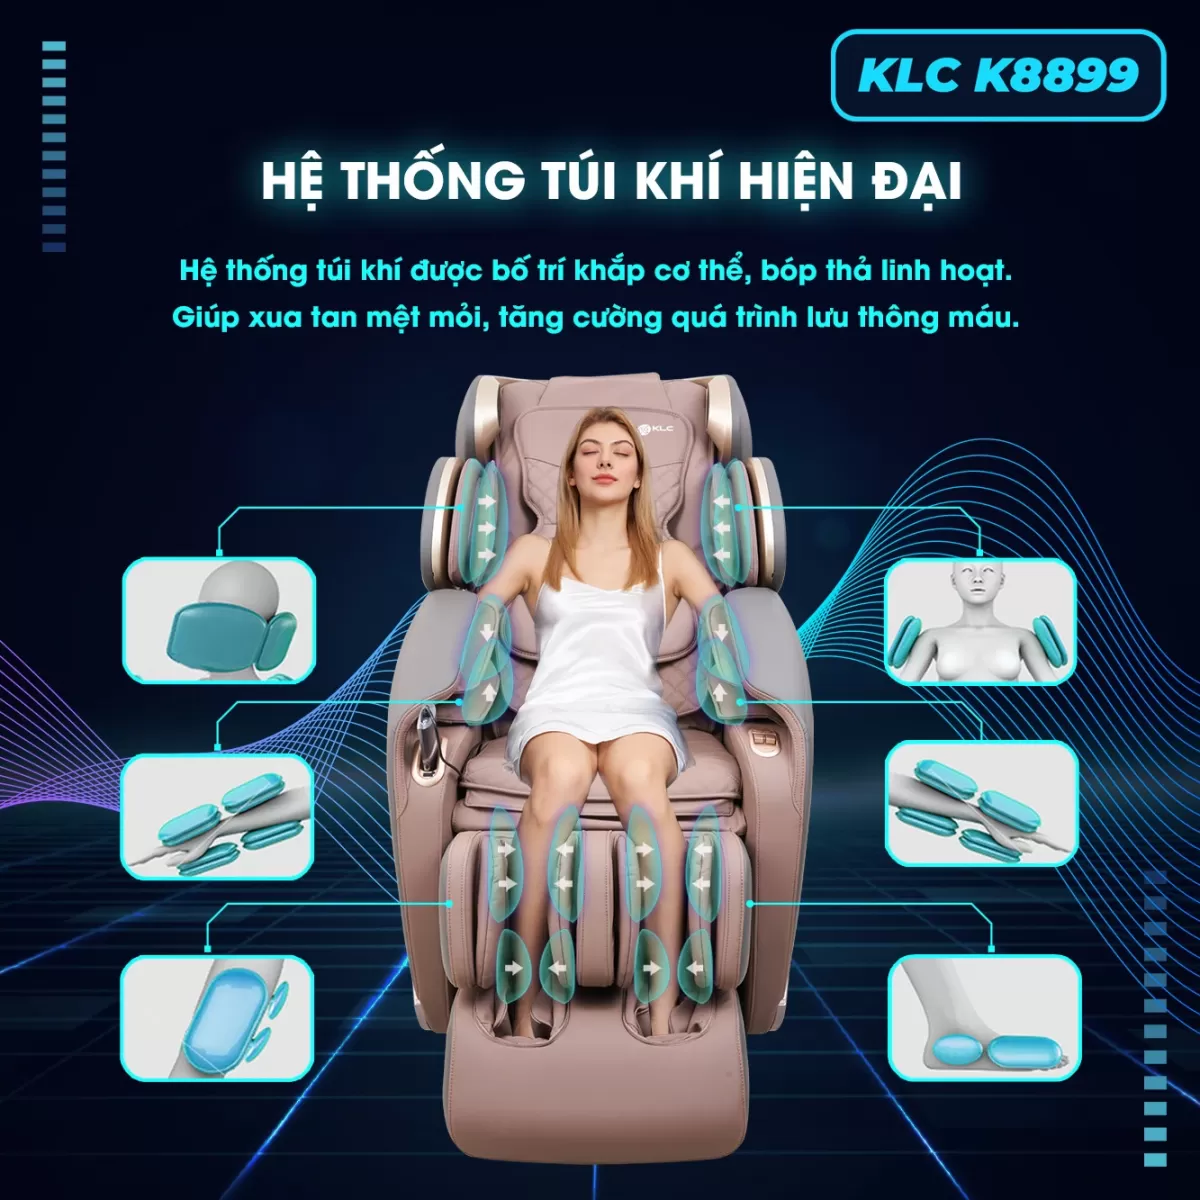 Hệ thống túi khí của Ghế Massage KLC K8899